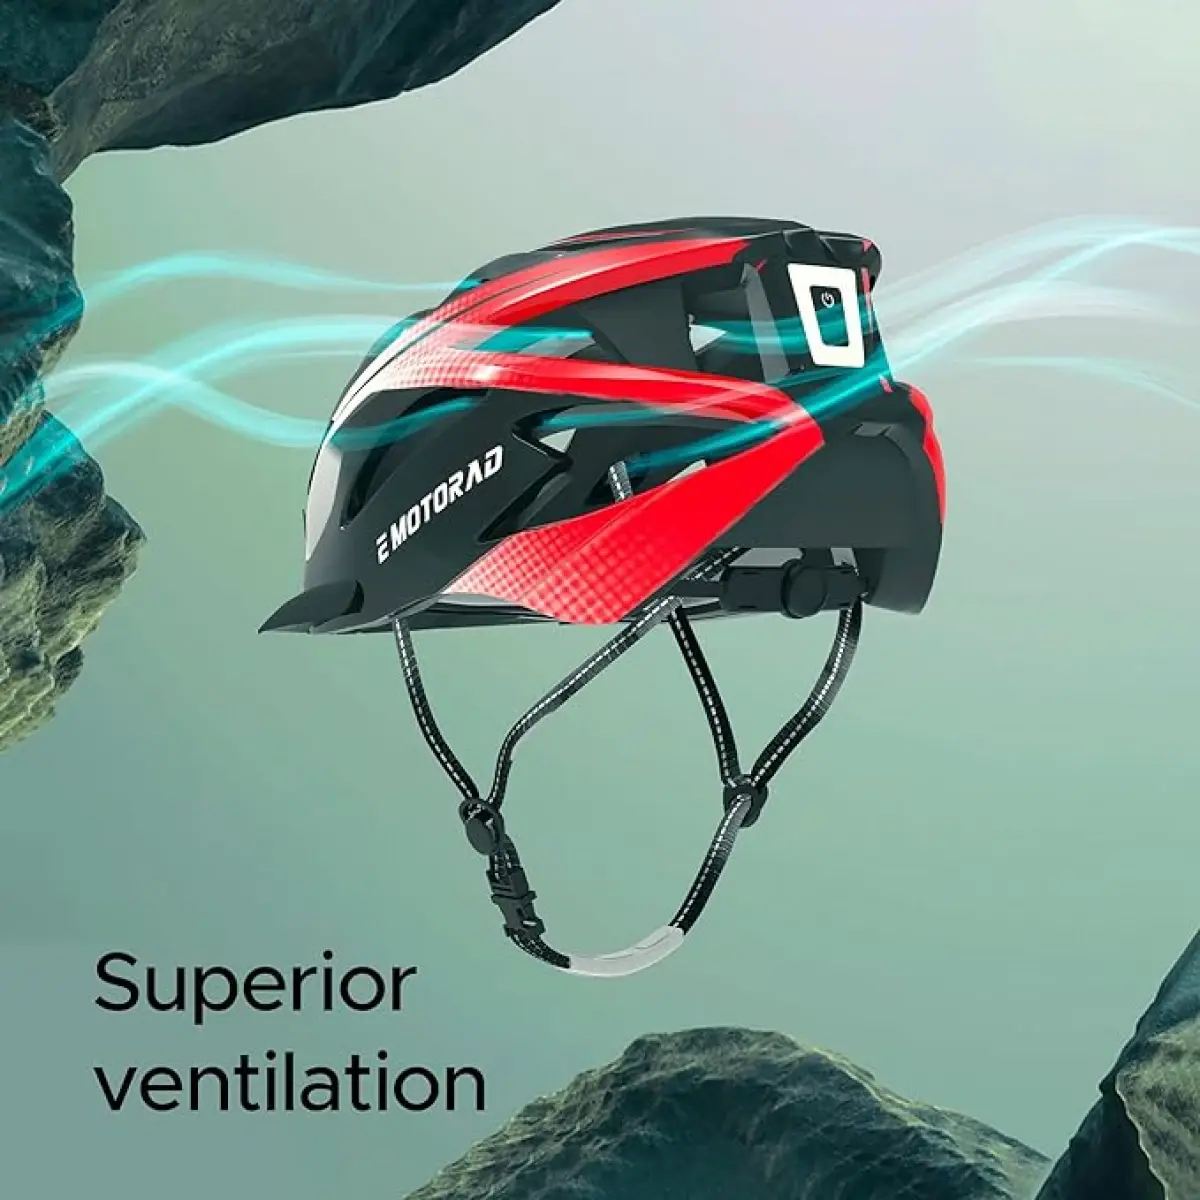 EMotorad Cooling 18 Vents Slipstream Riders Helmet, Red, 10Y+